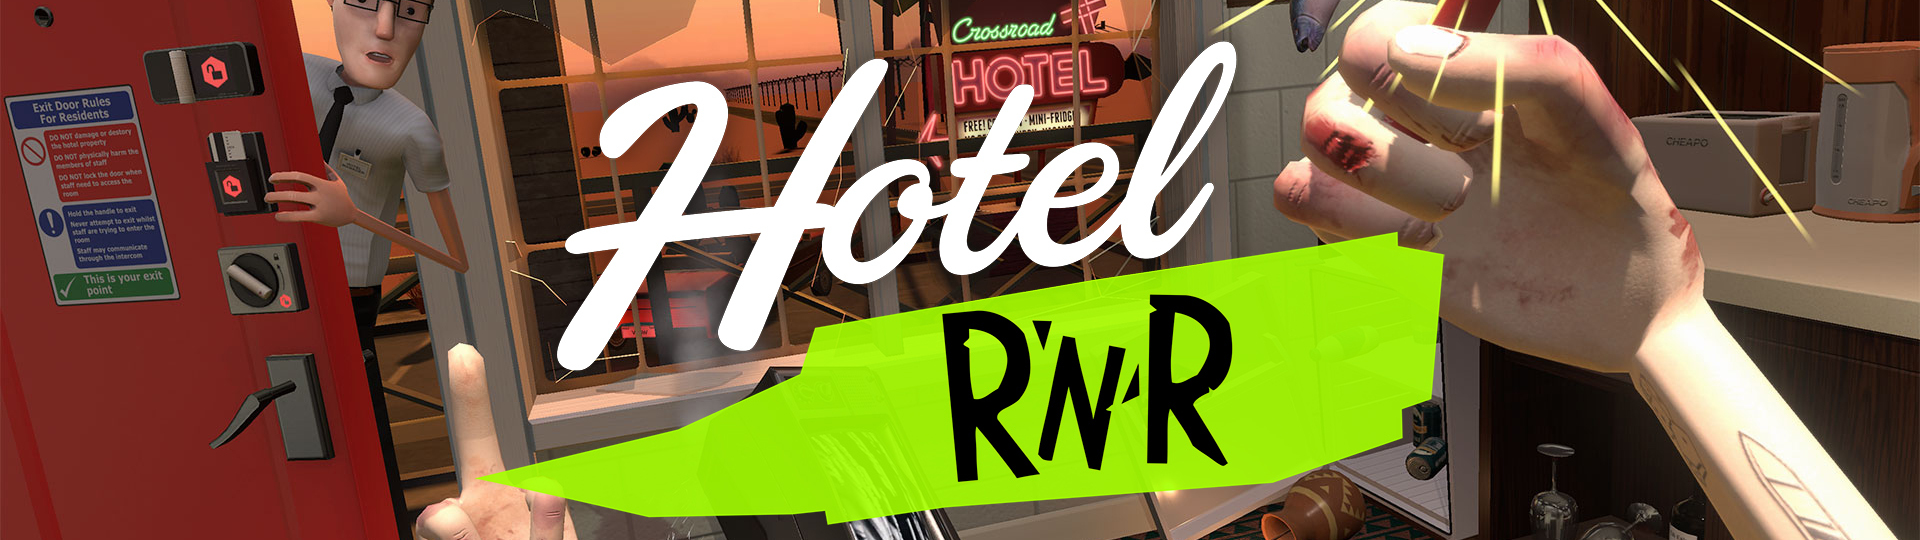 Hotel R’n’R – vysloužilá rocková hvězda ničí hotely | Recenze